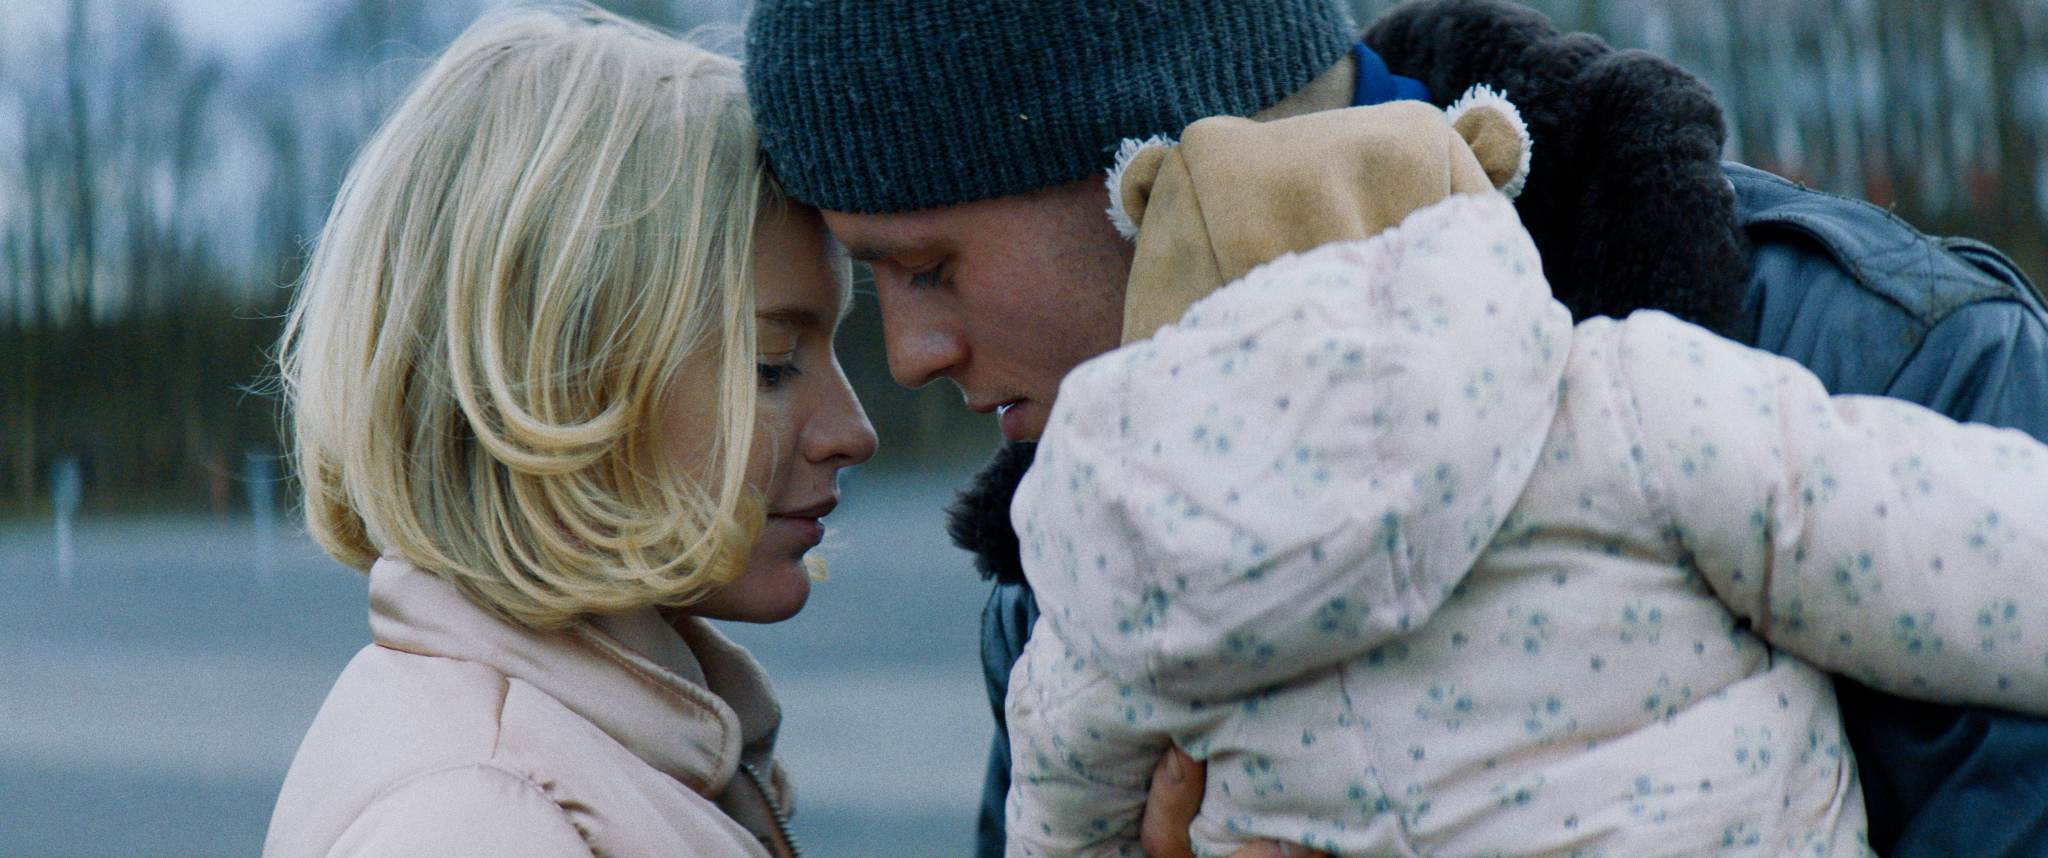 Filmstill aus "Kids Run": Ein Mann und eine Frau einander Kopf an Kopf zugewandt, der Mann trägt ein Baby mit Winterjacke und Fellmütze auf dem Arm.